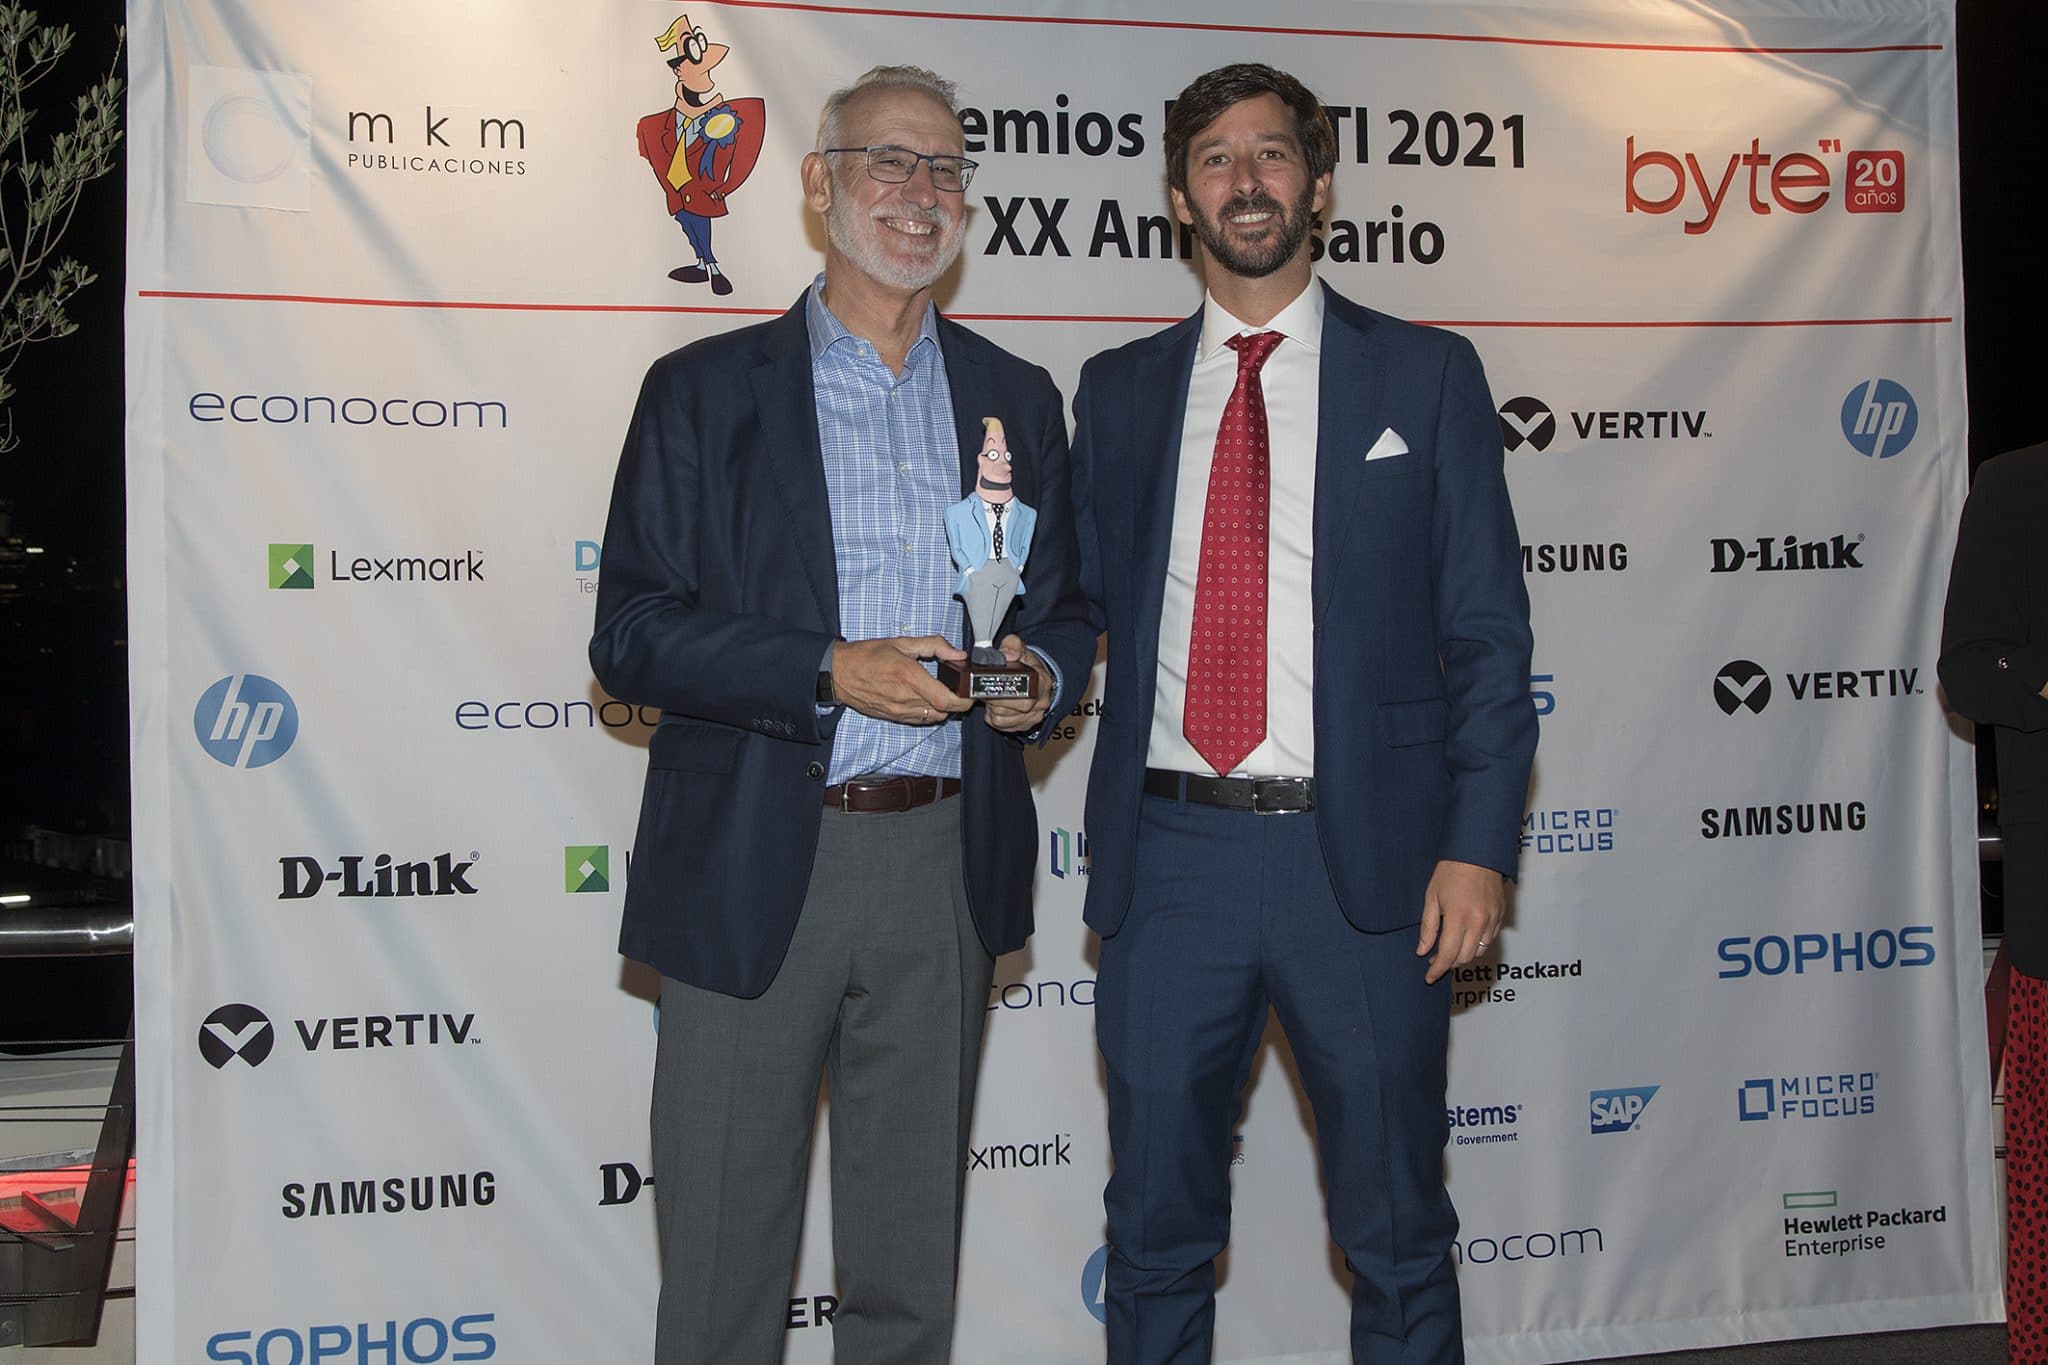 Ricardo Maté, Vicepresidente para el Sur de EMEA de Sophos recibe su premio como Personalidad del Año de manos de Ignacio Sáez, managing director de MKM Publicaciones 